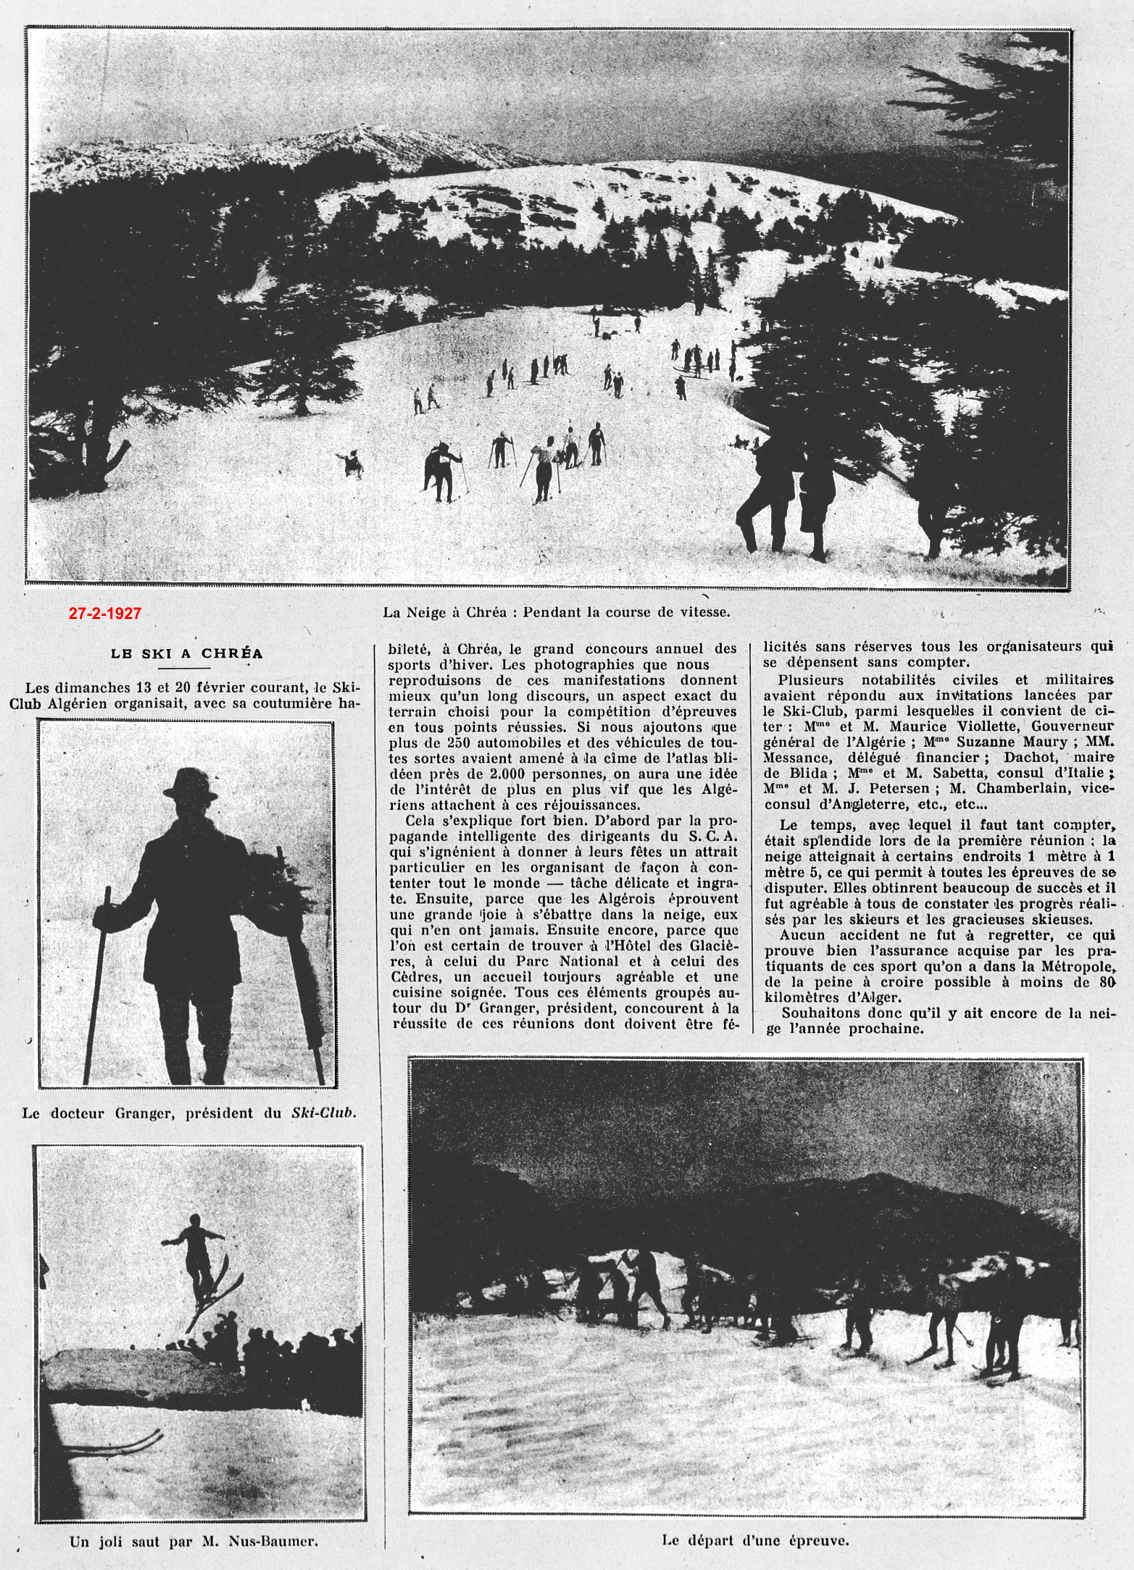 Grand concours annuel de sports d'hiver- 1927 